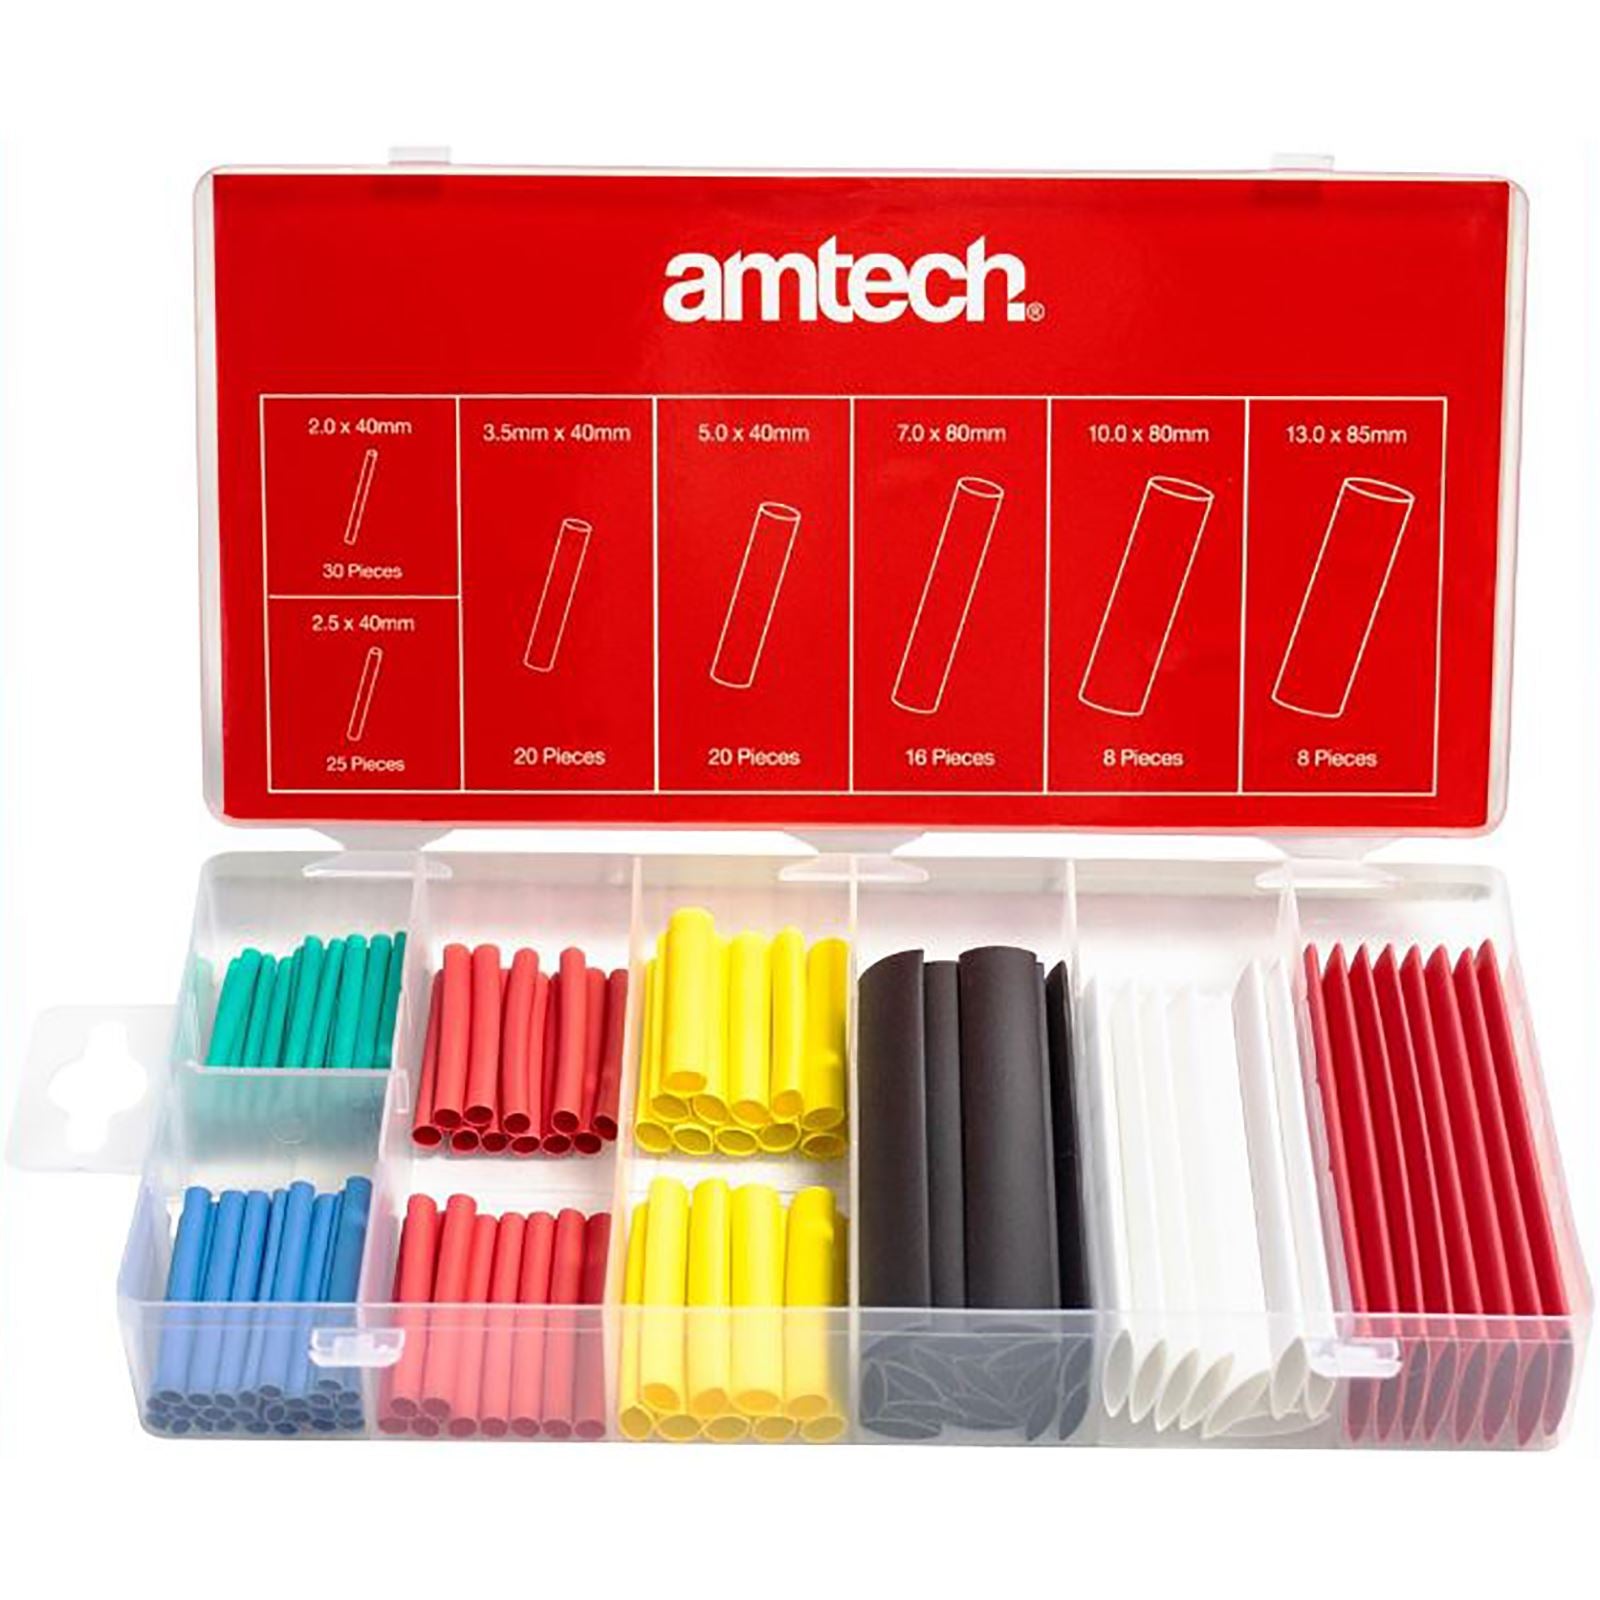 Amtech 127 Piece Colour Shrink Wrap Assortment